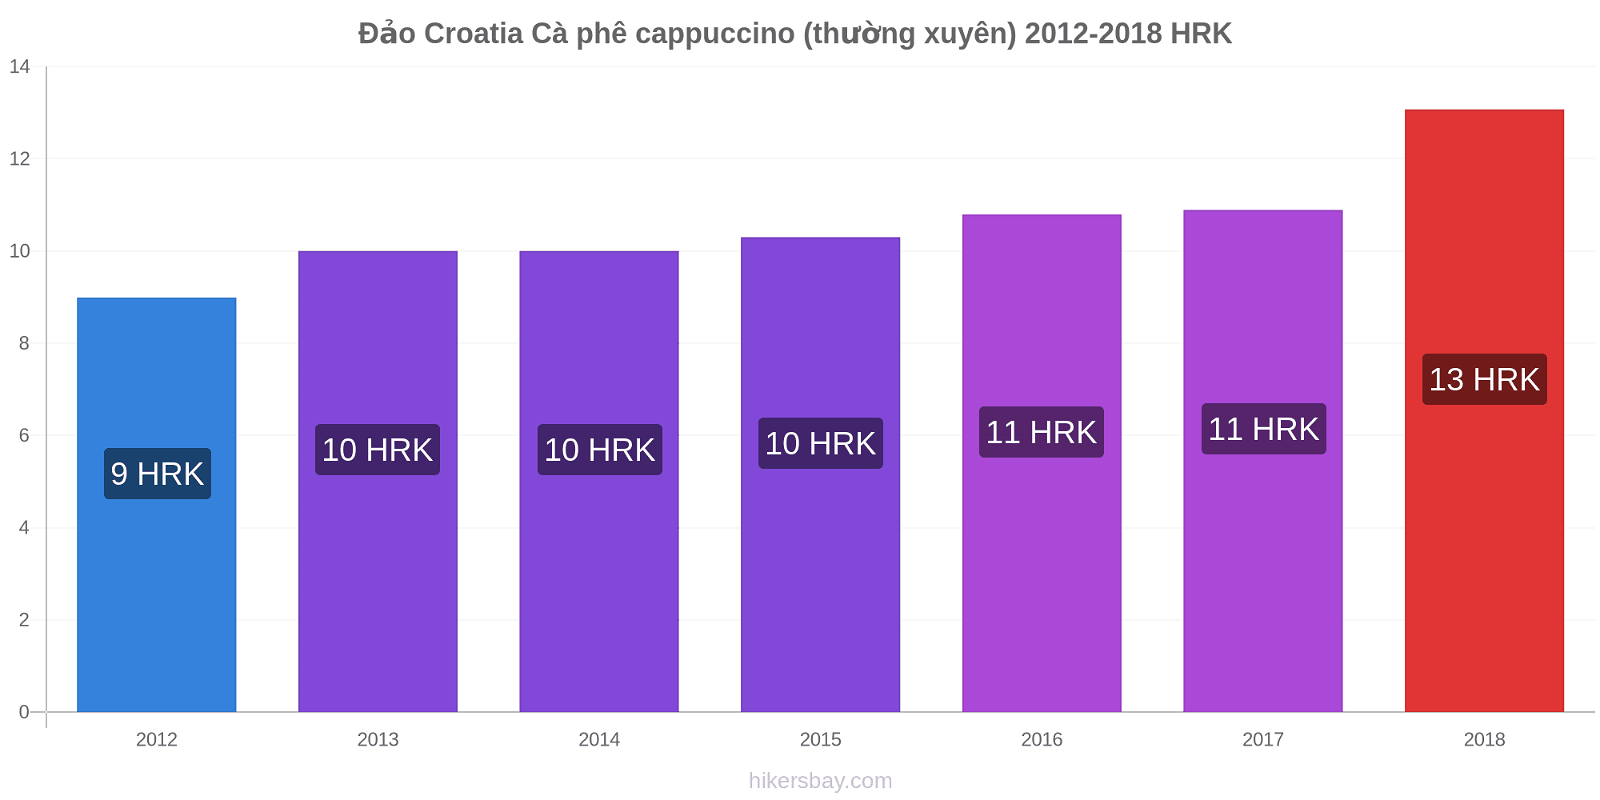 Đảo Croatia thay đổi giá Cà phê cappuccino (thường xuyên) hikersbay.com